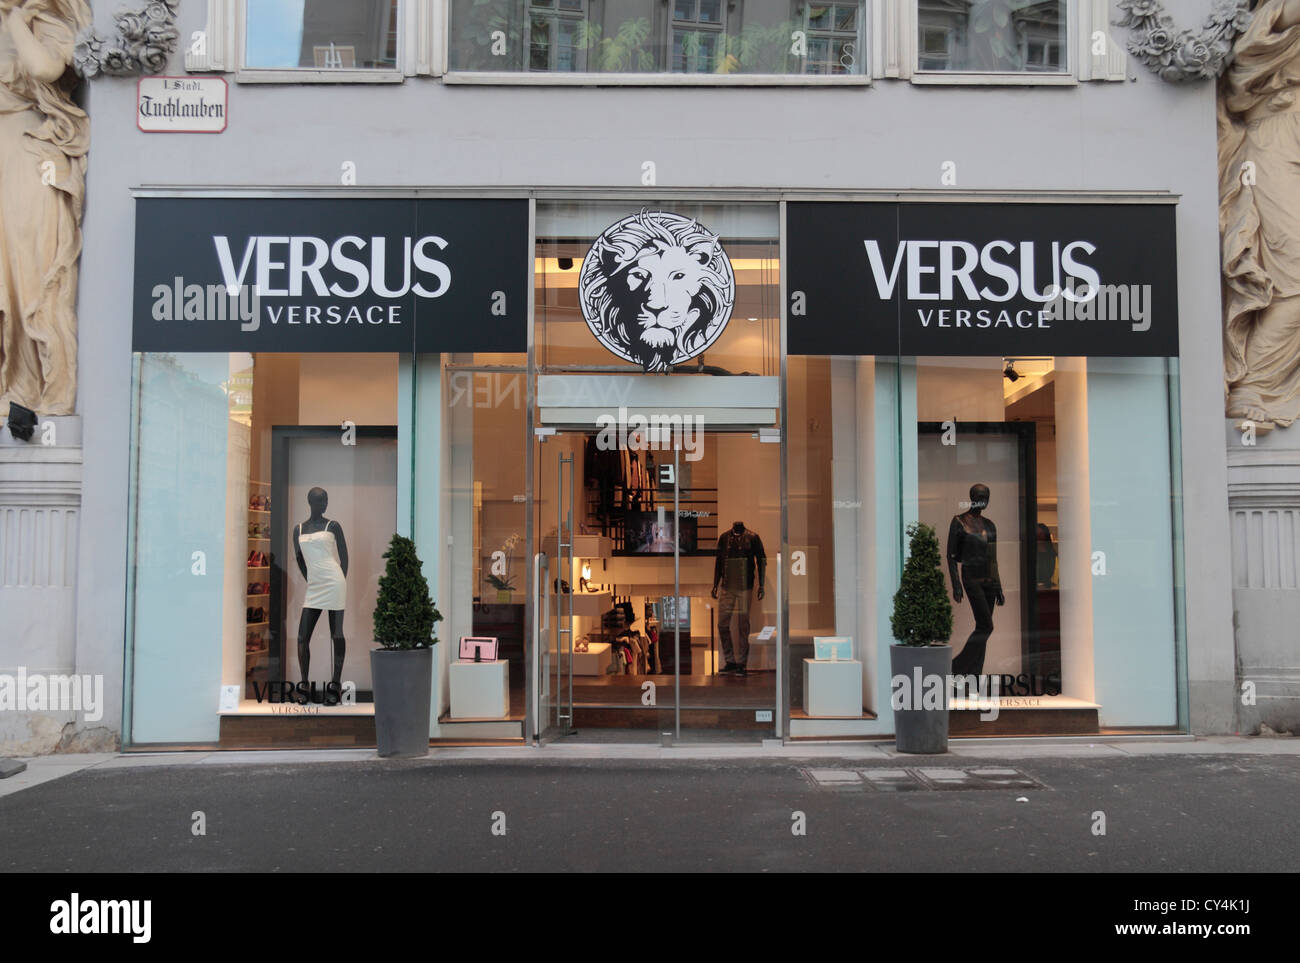 versus versace shop